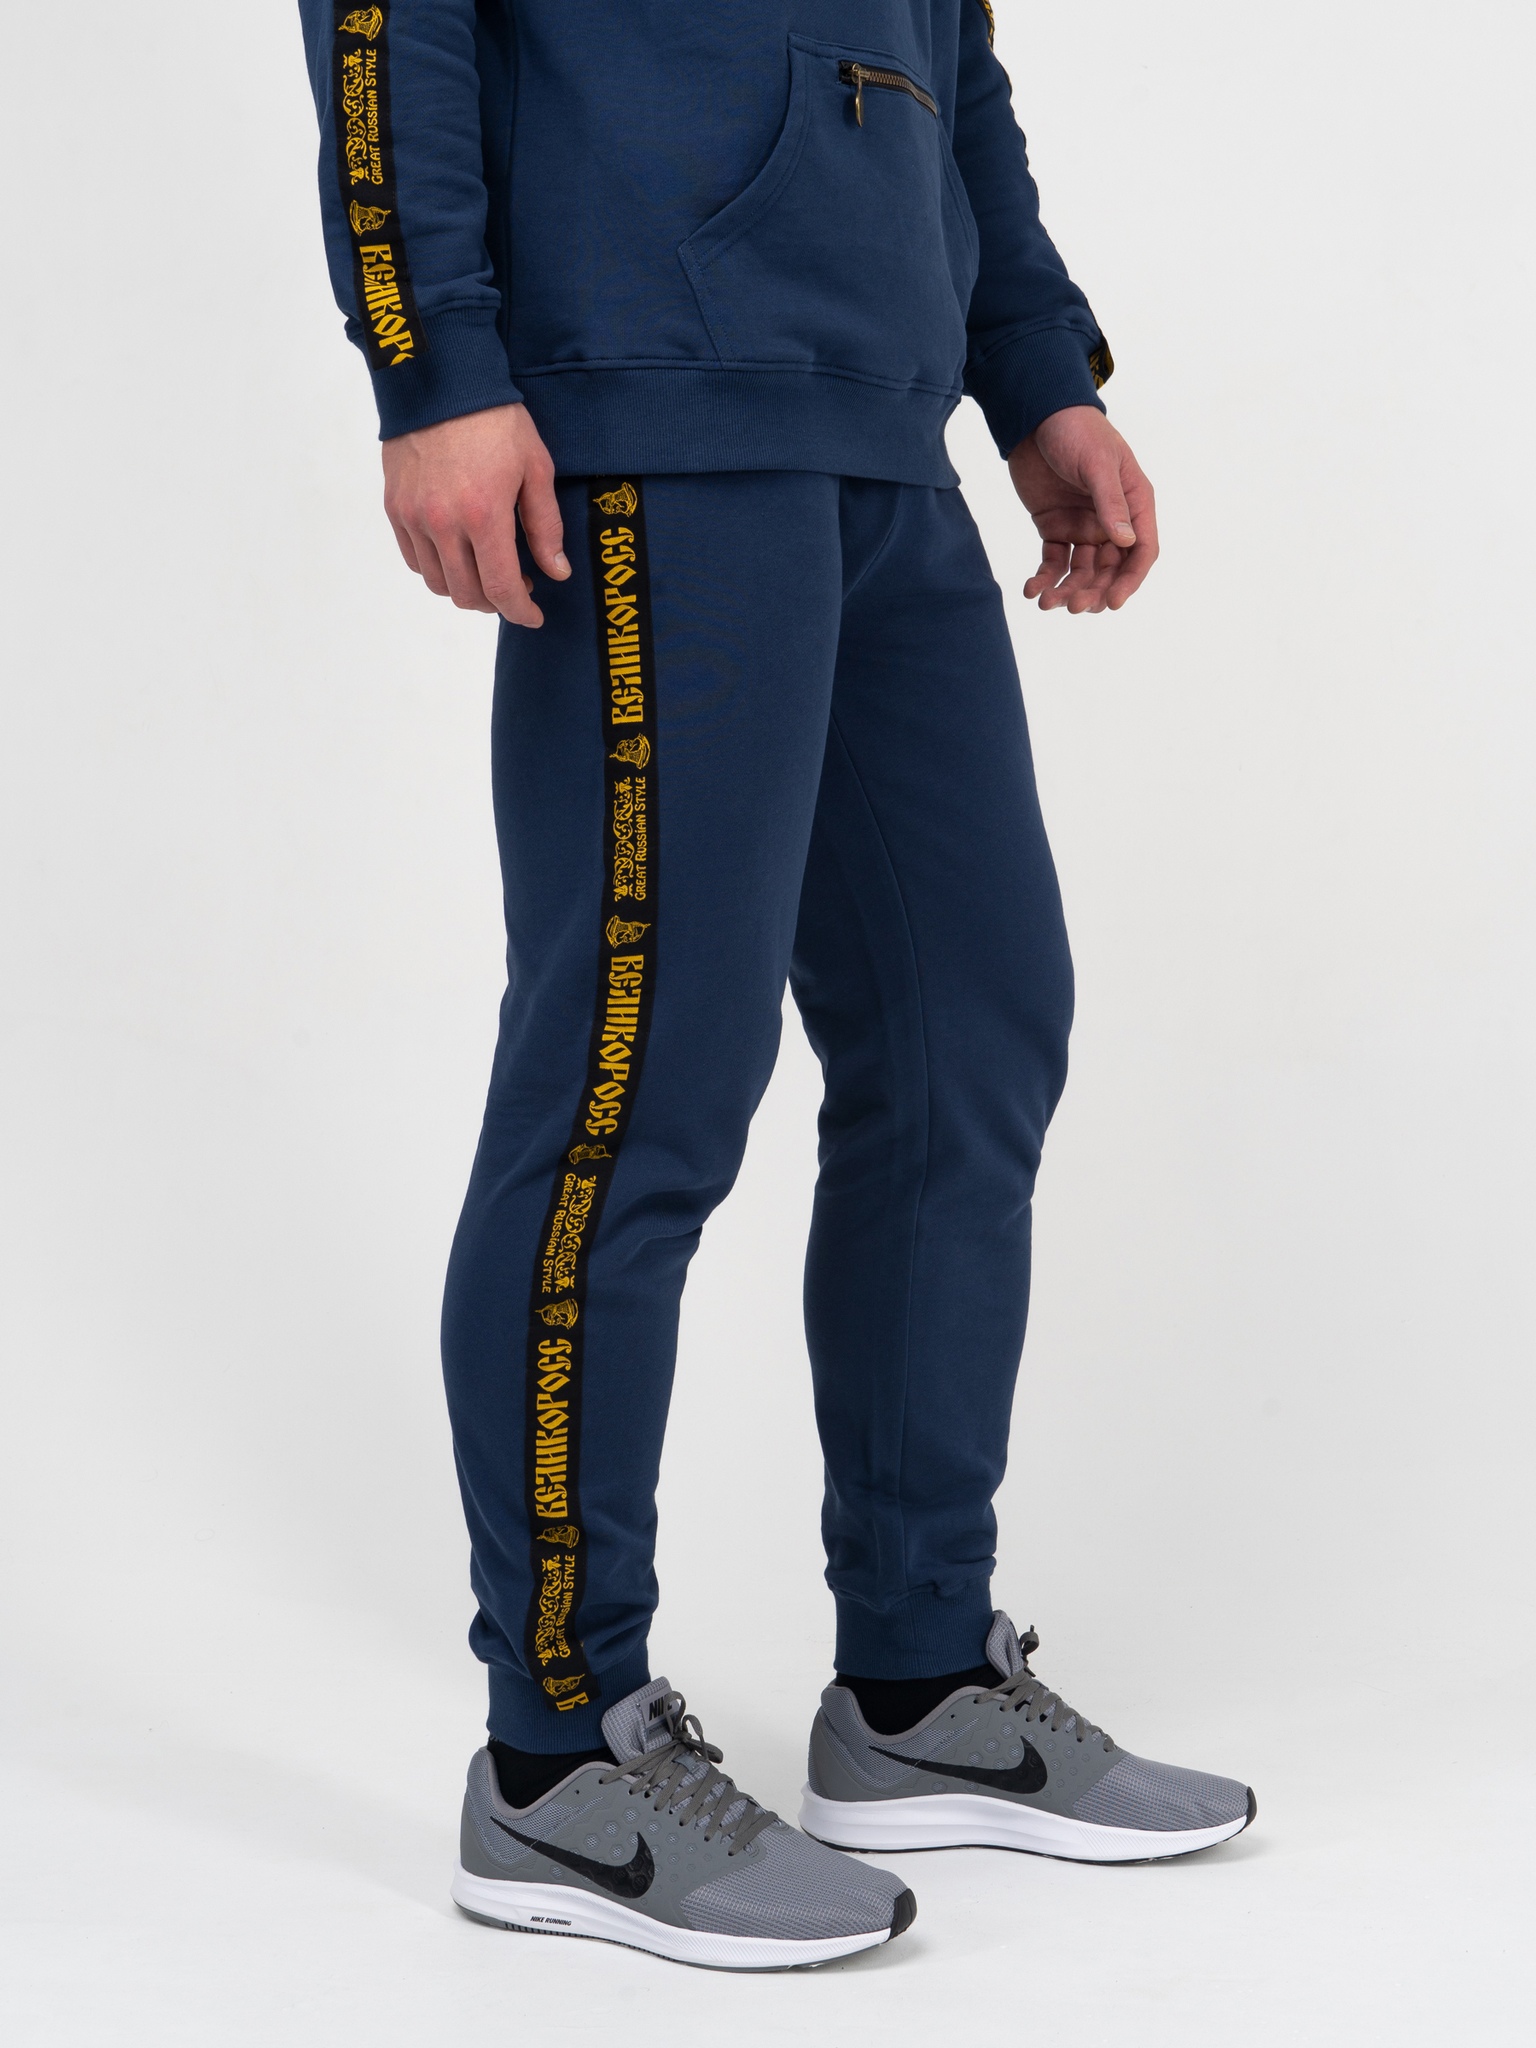 фото Спортивные брюки мужские великоросс чемпион синие 44 ru